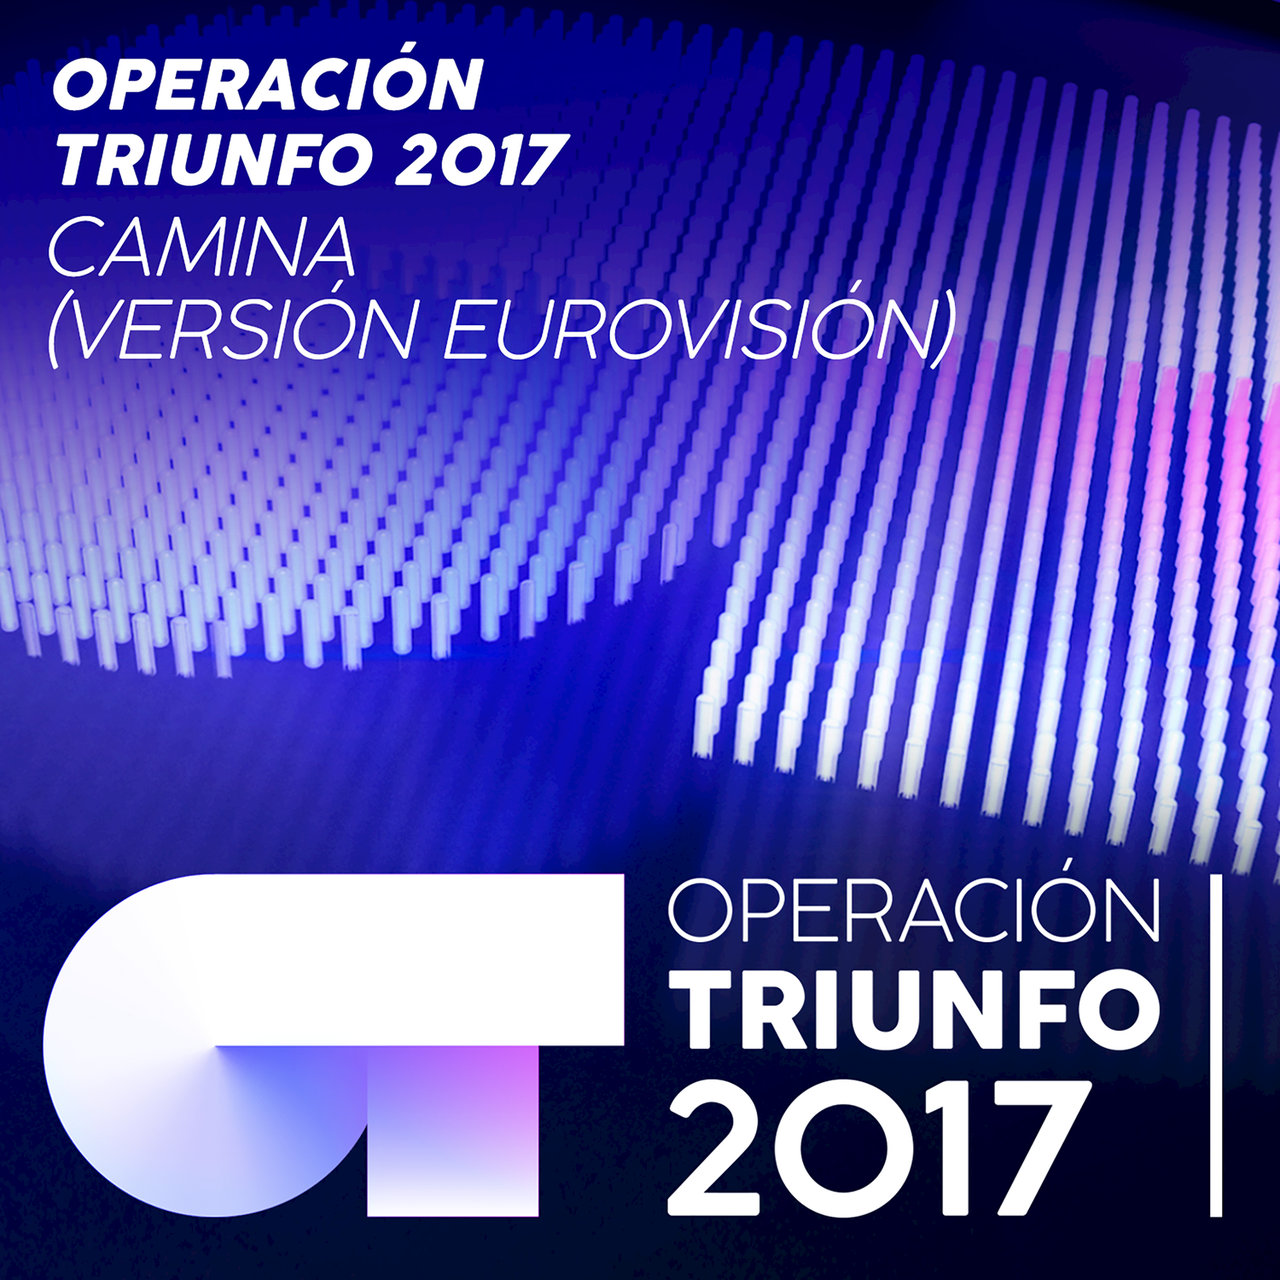 Operación Triunfo 2017 — Camina (Versión Eurovisión) cover artwork